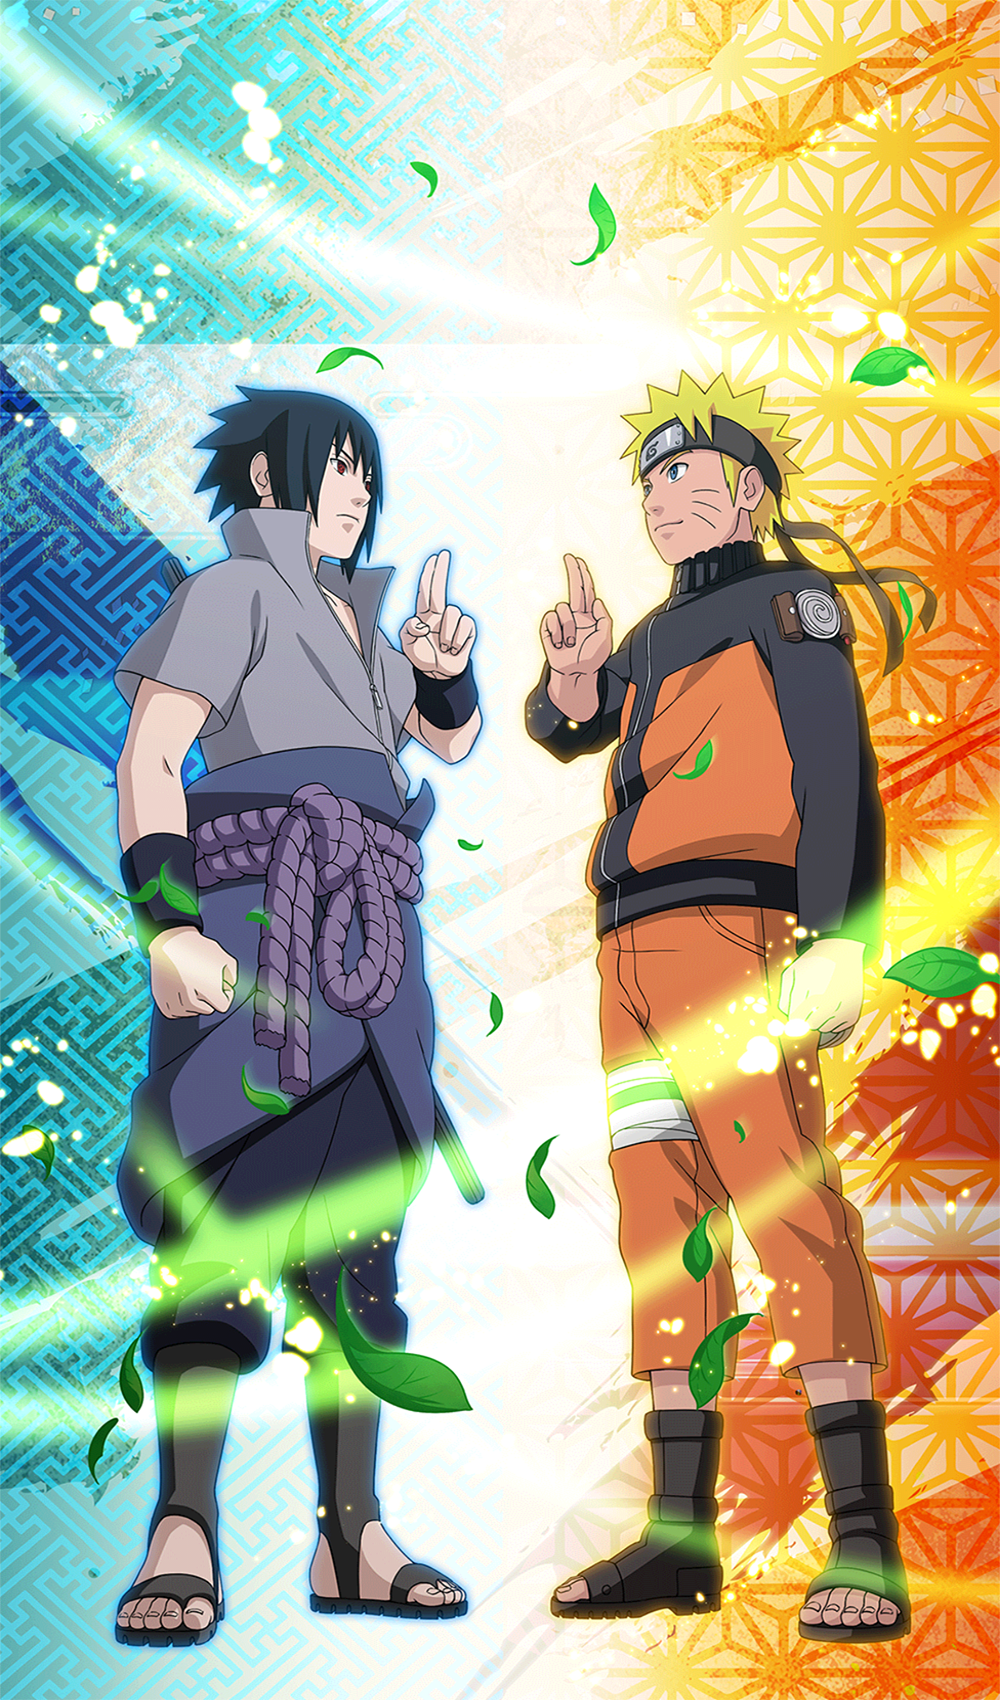 Tham gia vào trò chơi Naruto Ultimate Ninja Blazing đầy kịch tính, hấp dẫn, đồng thời được chiêm ngưỡng các nhân vật Naruto tuyệt đẹp trong game. Hãy cùng trải nghiệm và thăng hoa cùng Naruto và đồng đội!